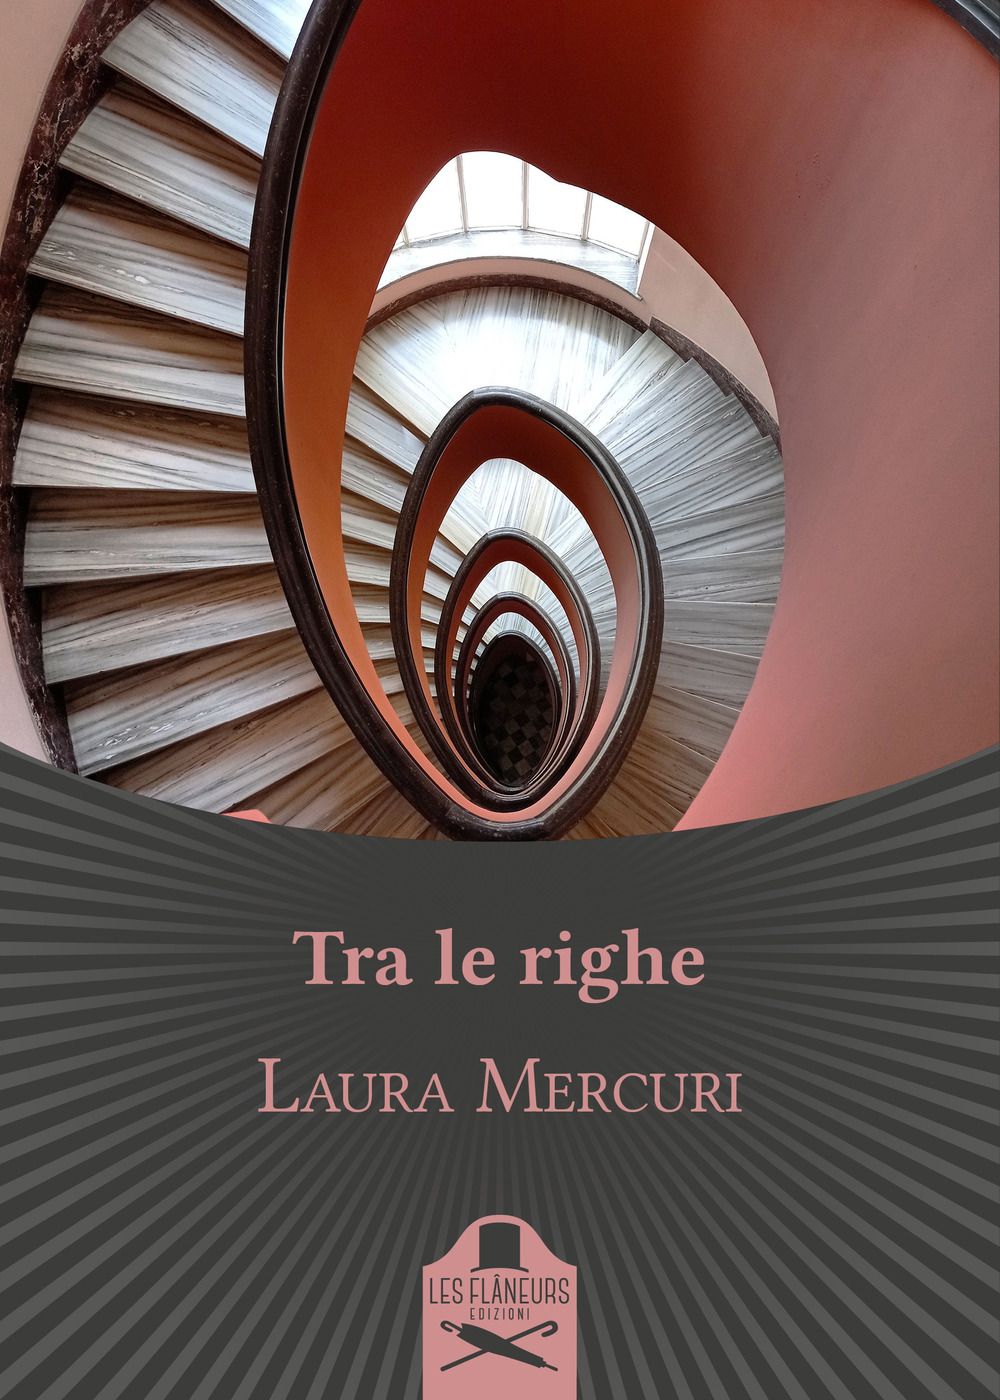 Libri Laura Mercuri - Tra Le Righe NUOVO SIGILLATO, EDIZIONE DEL 03/06/2021 SUBITO DISPONIBILE